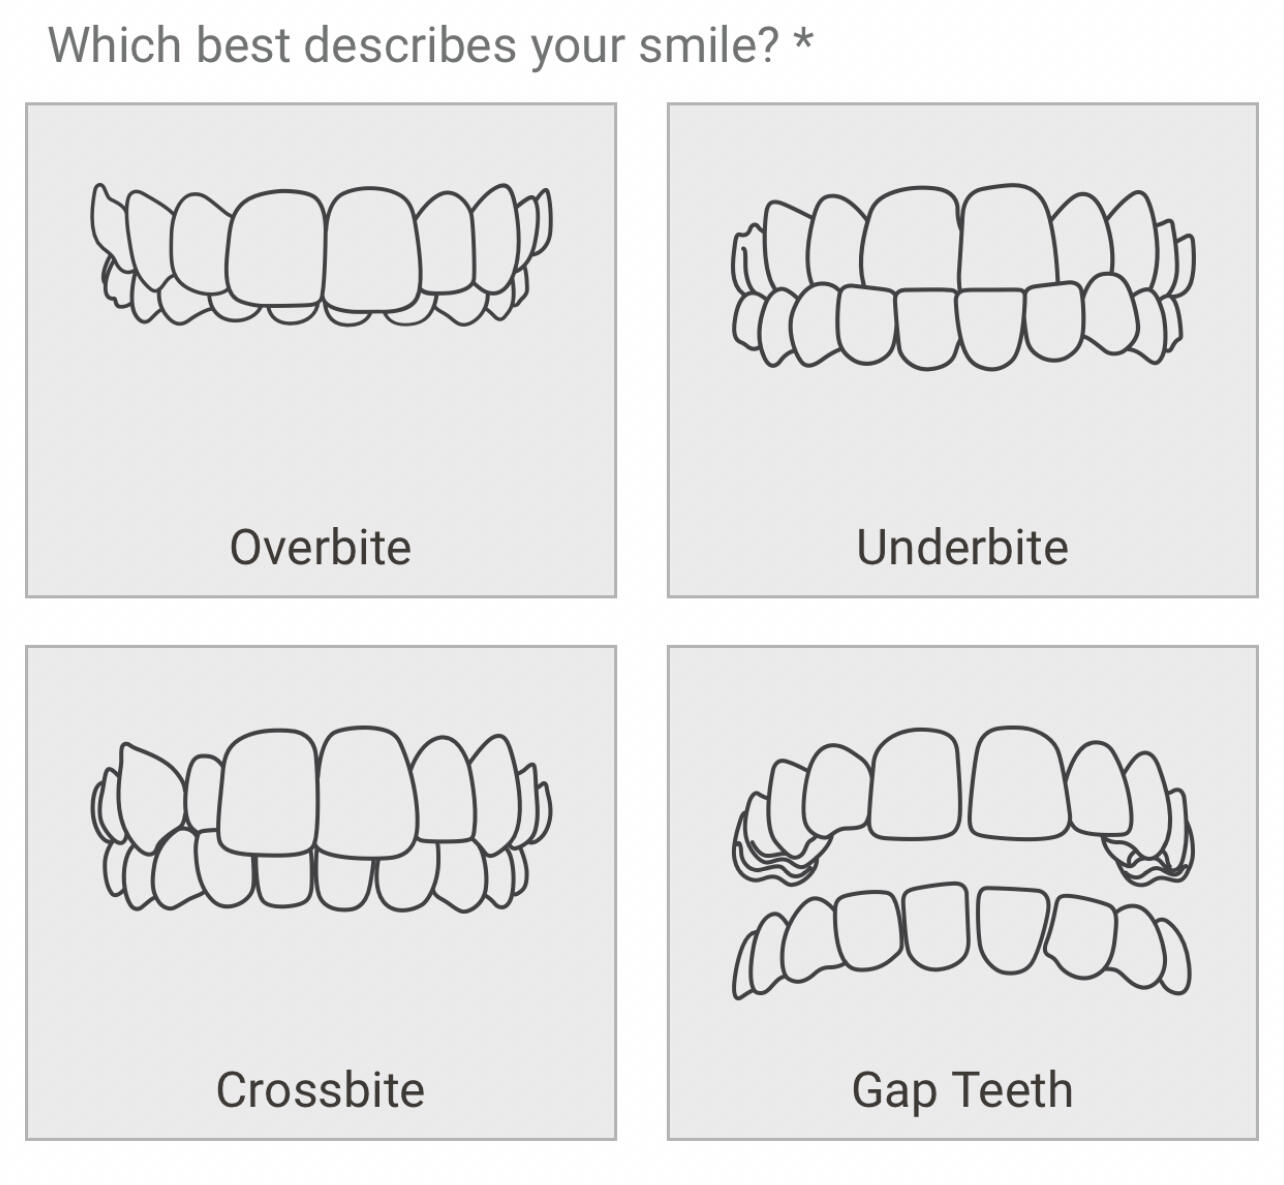 Soqeul dental office Invisalign smile assessment